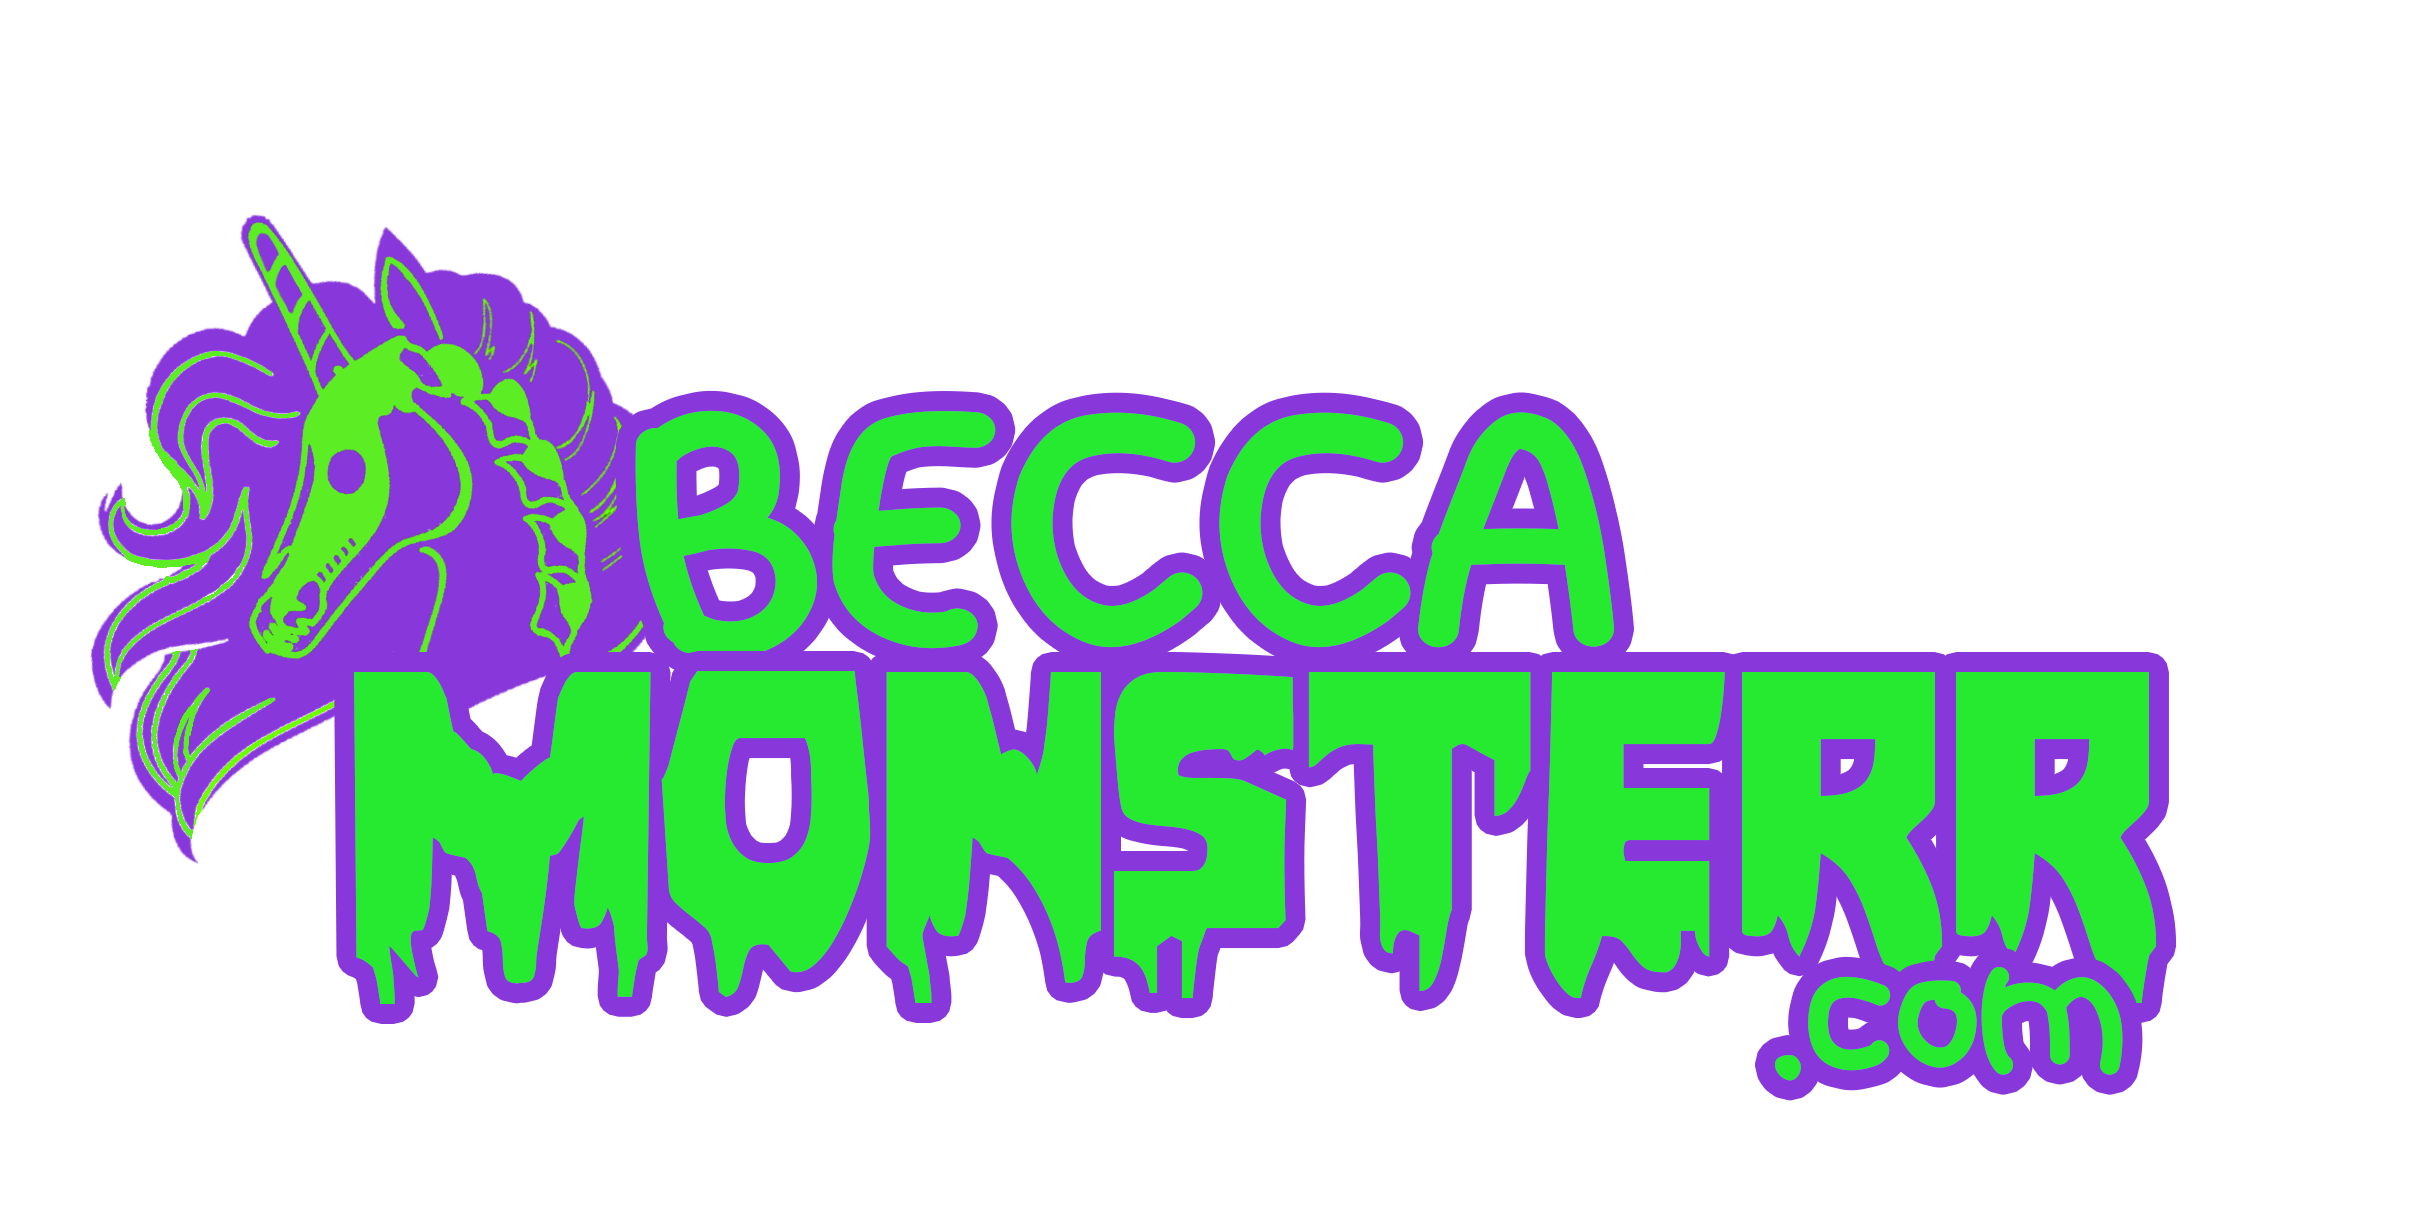 BECCAM0NSTERR Logo